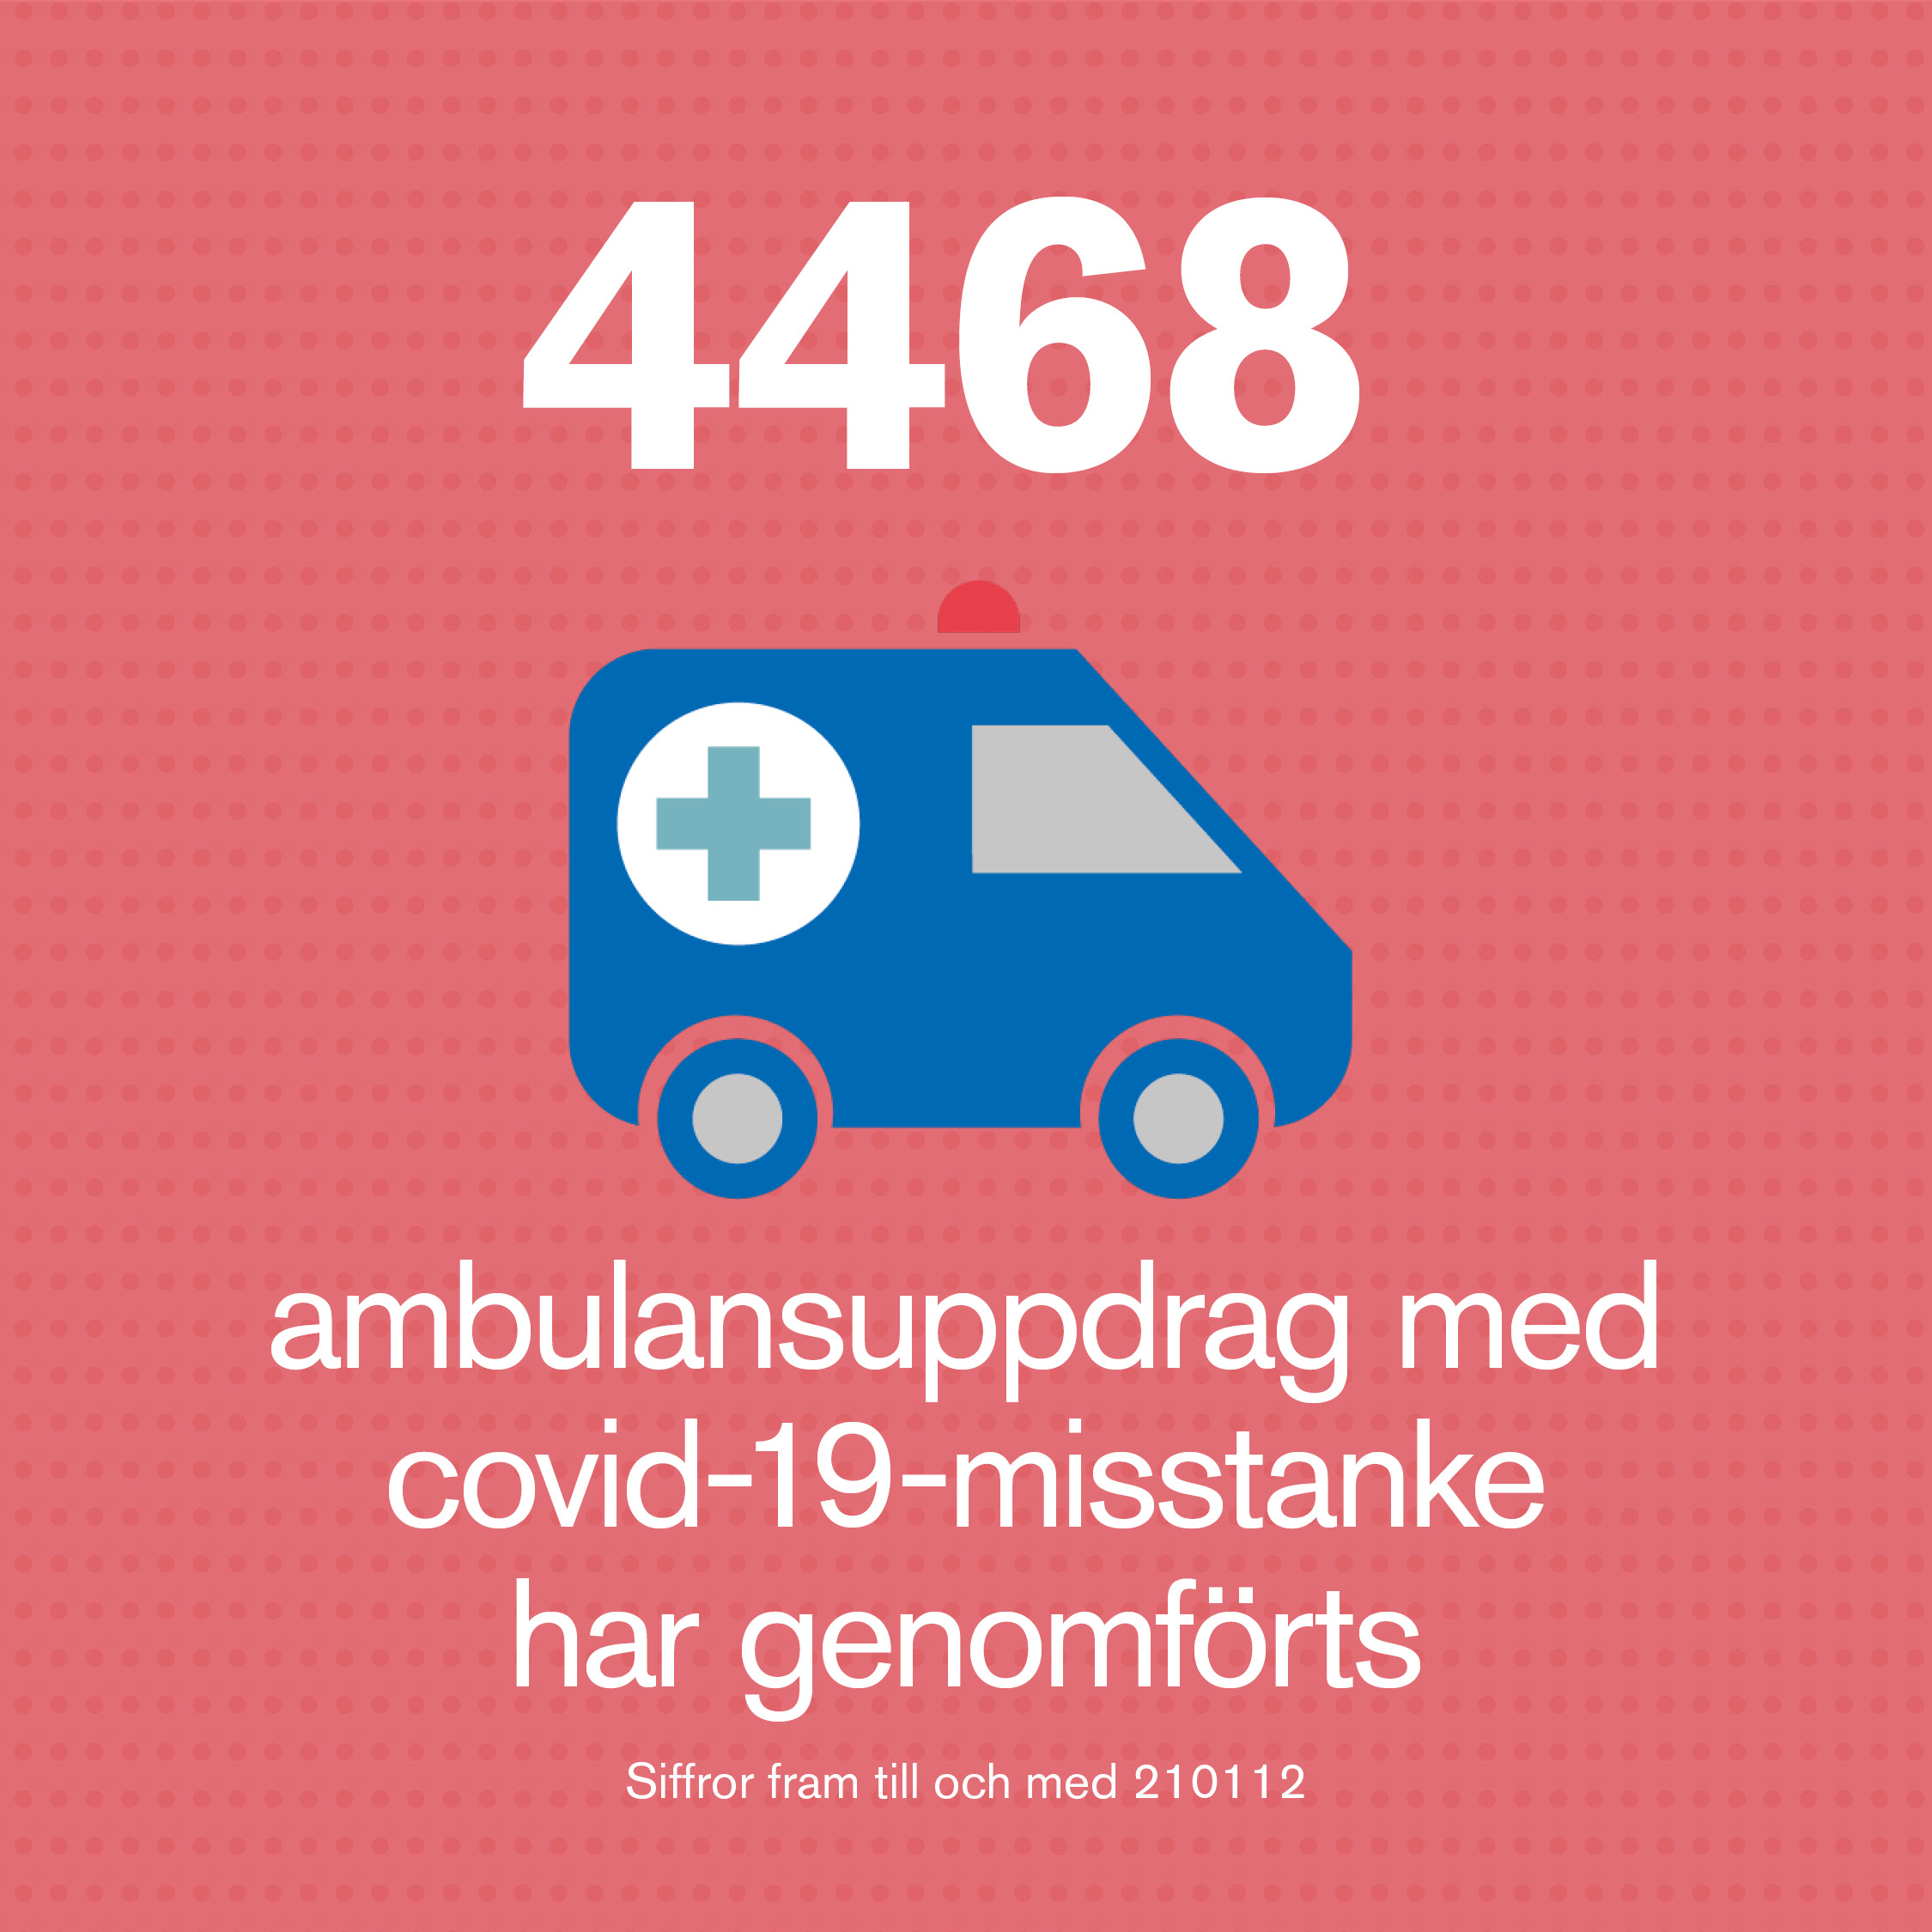 4468 ambulansuppdrag med misstänkt covid-19 har gjorts